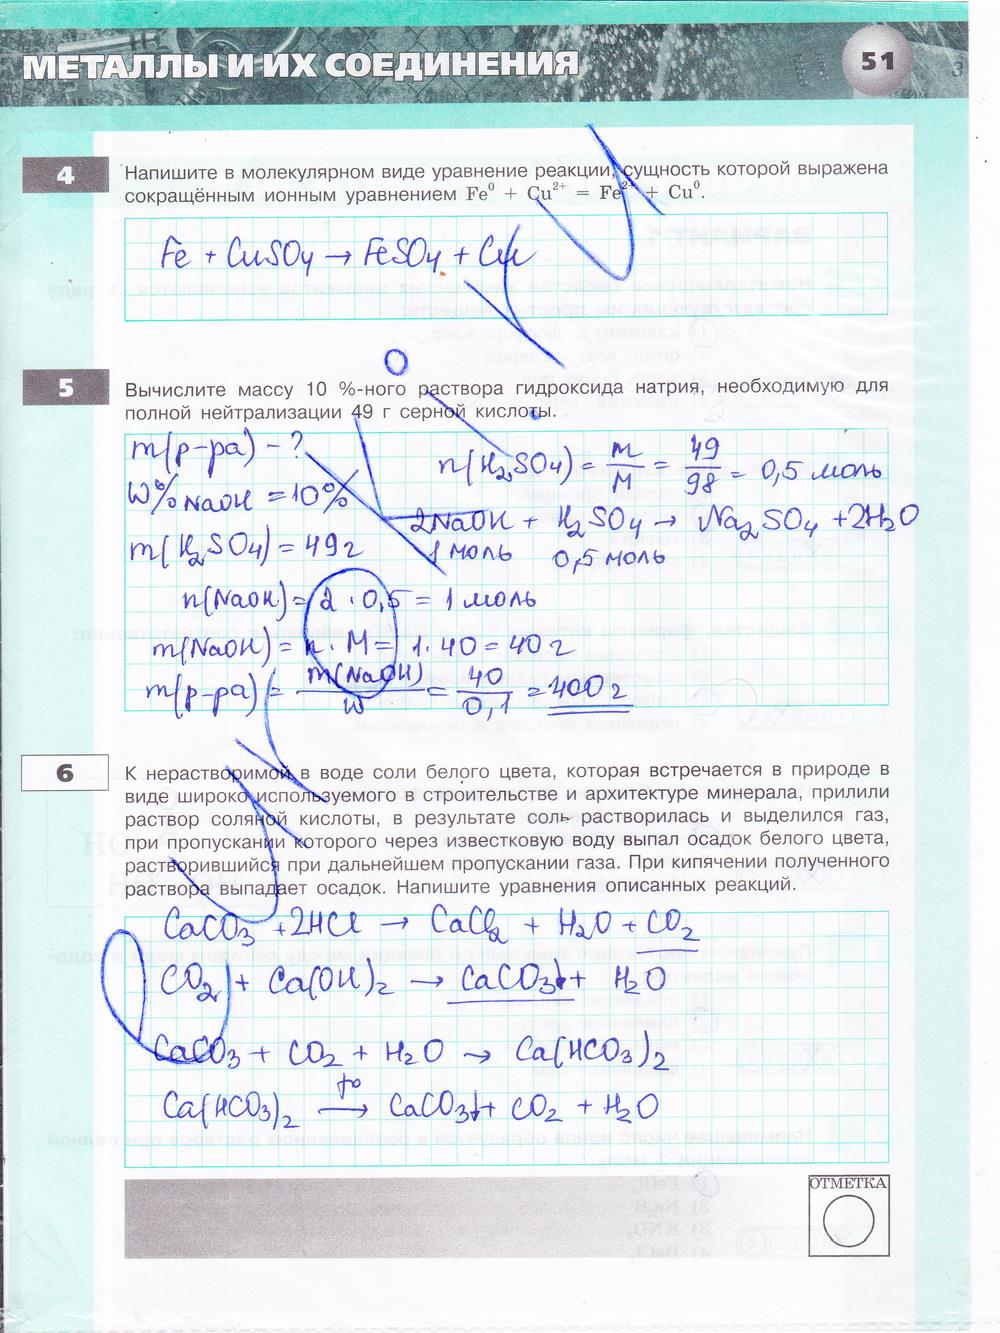 гдз 9 класс тетрадь-экзаменатор страница 51 химия Бобылева, Бирюлина